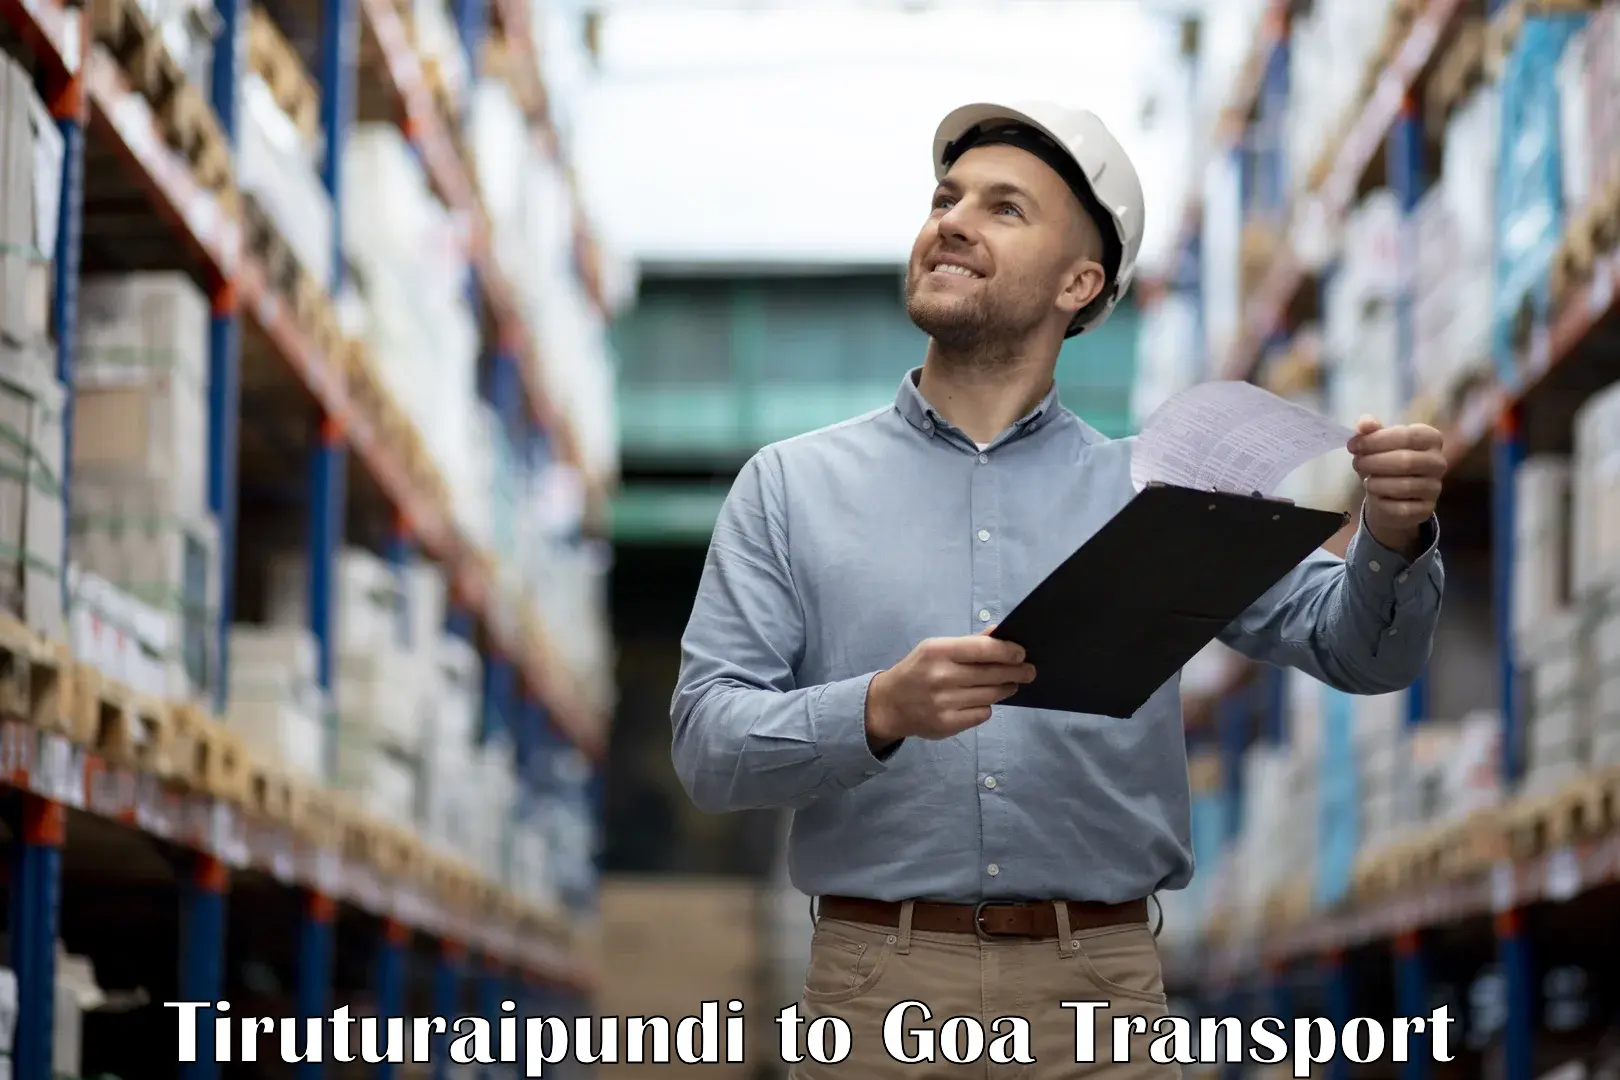 Pick up transport service Tiruturaipundi to Goa